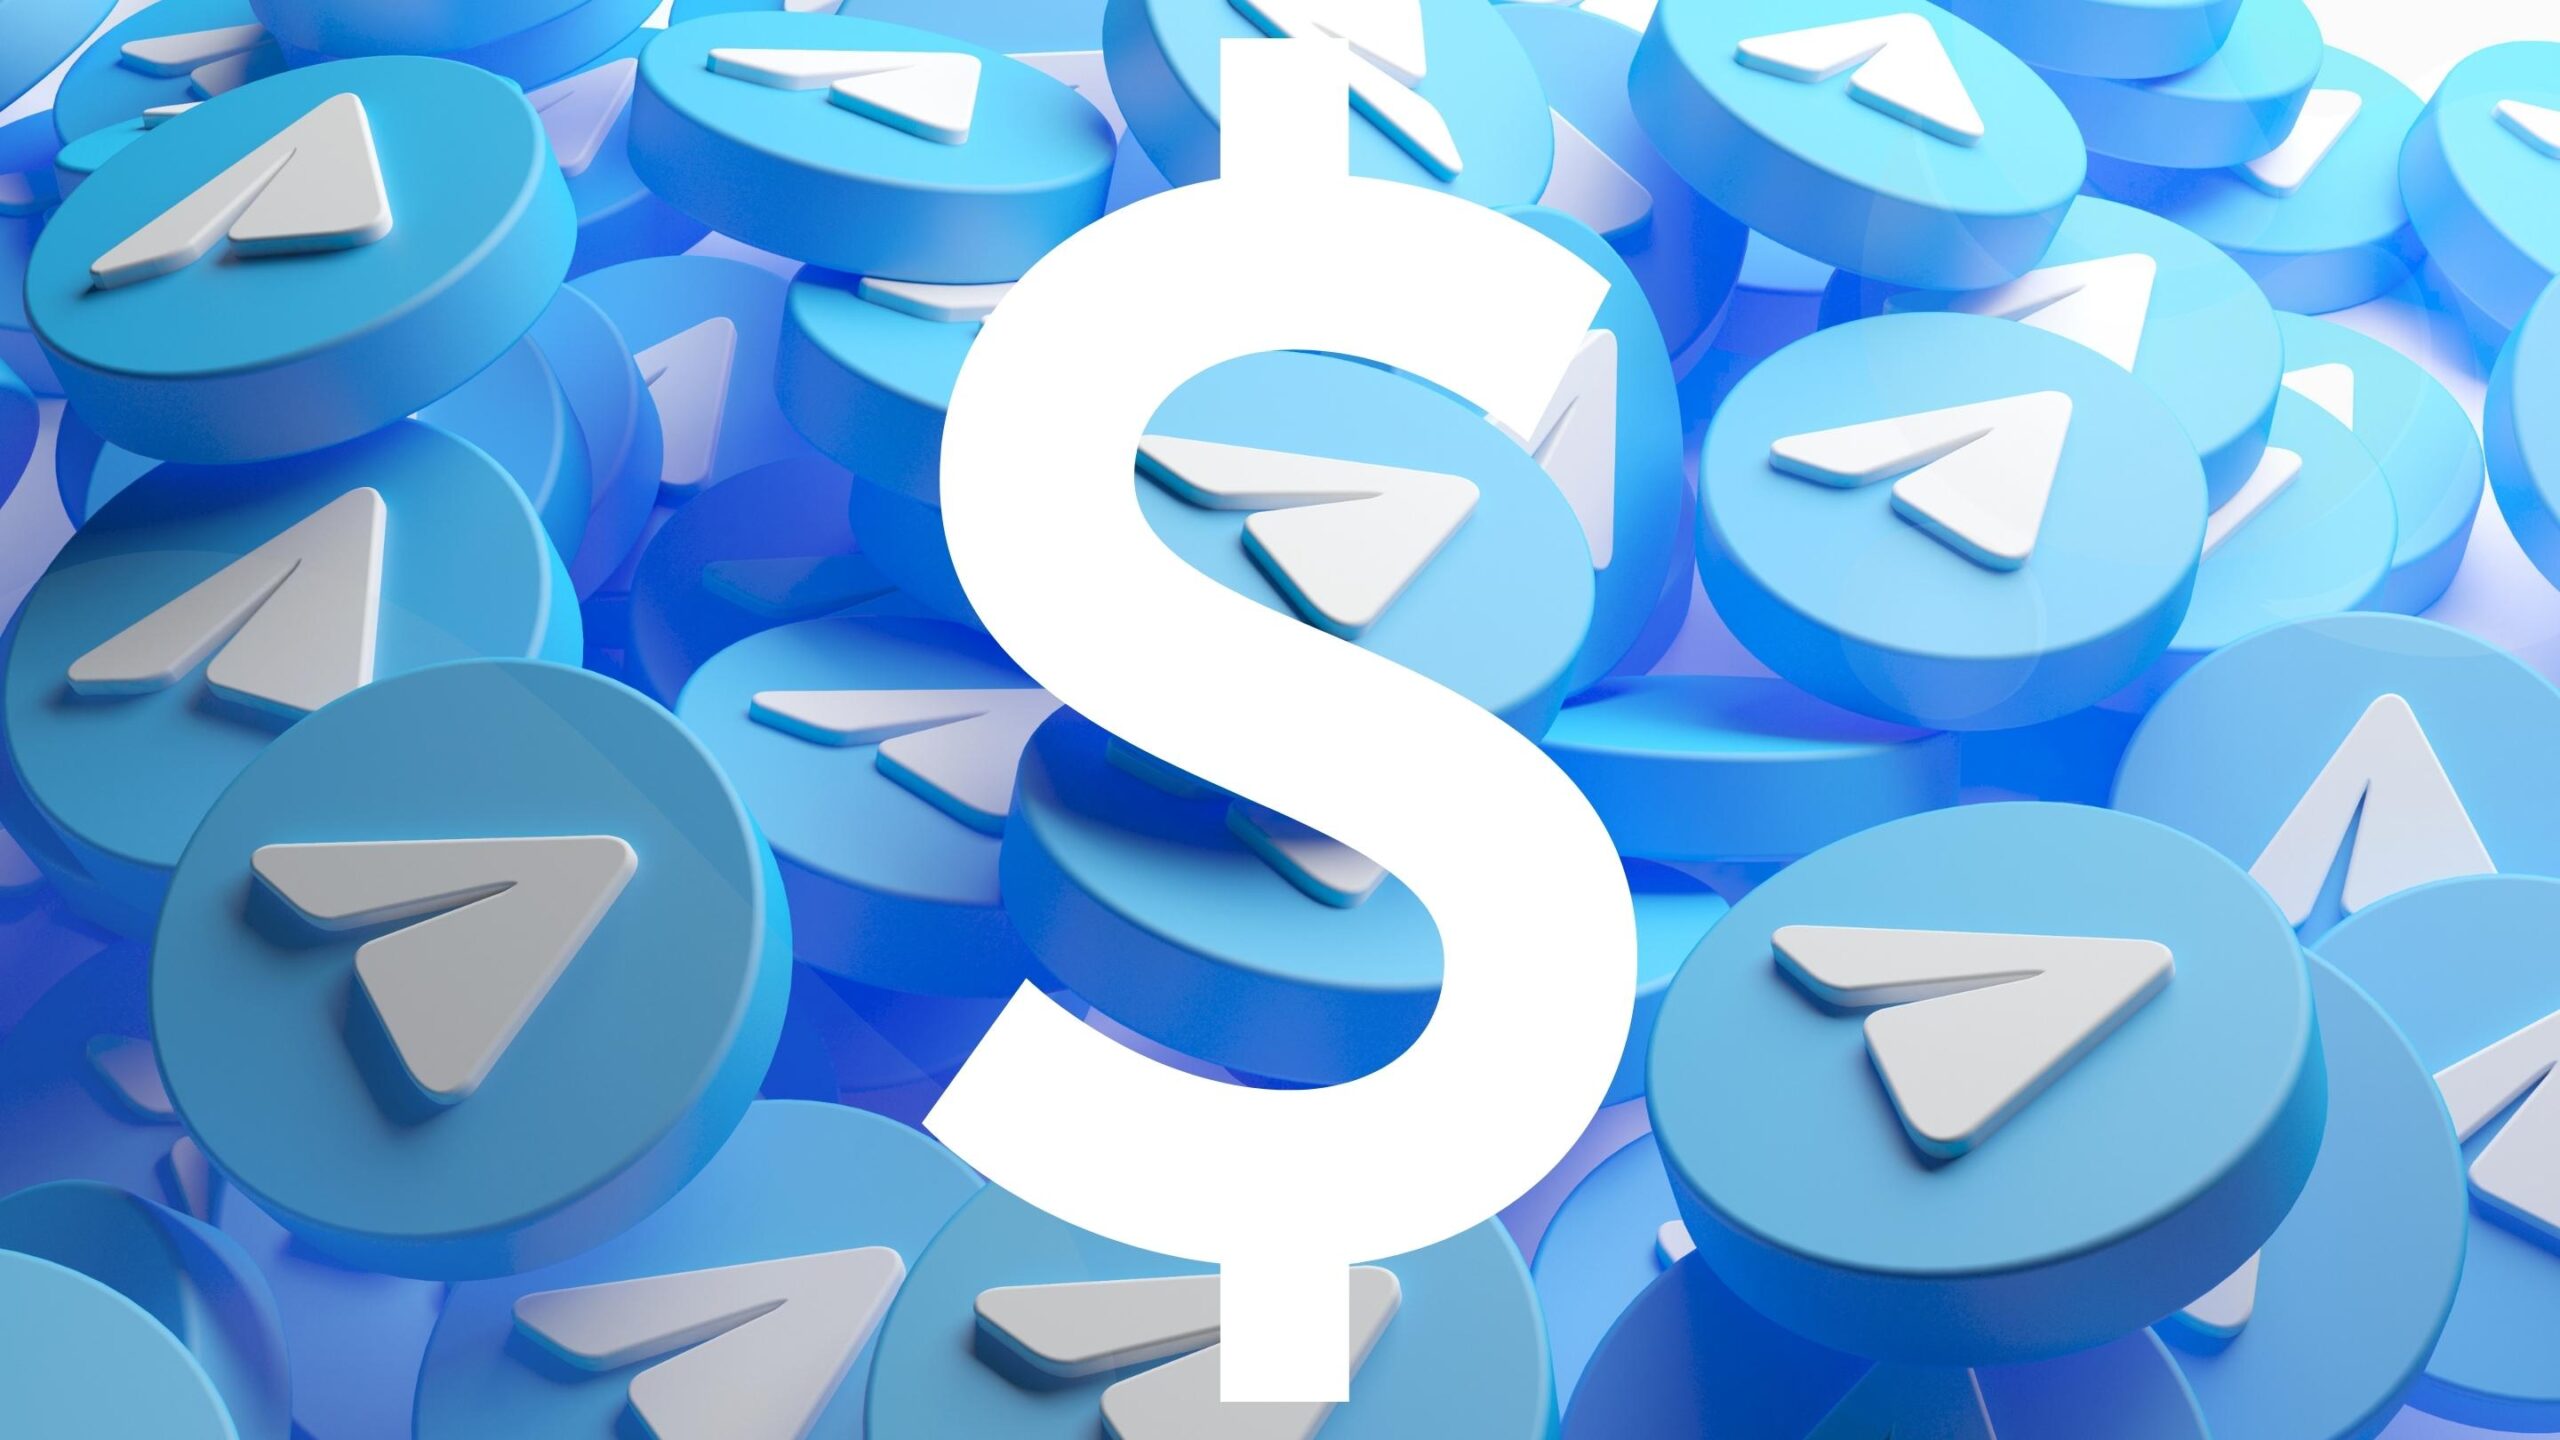 Polêmica: Telegram libera assinatura Premium de graça se usuário ceder número de telefone para enviar SMS